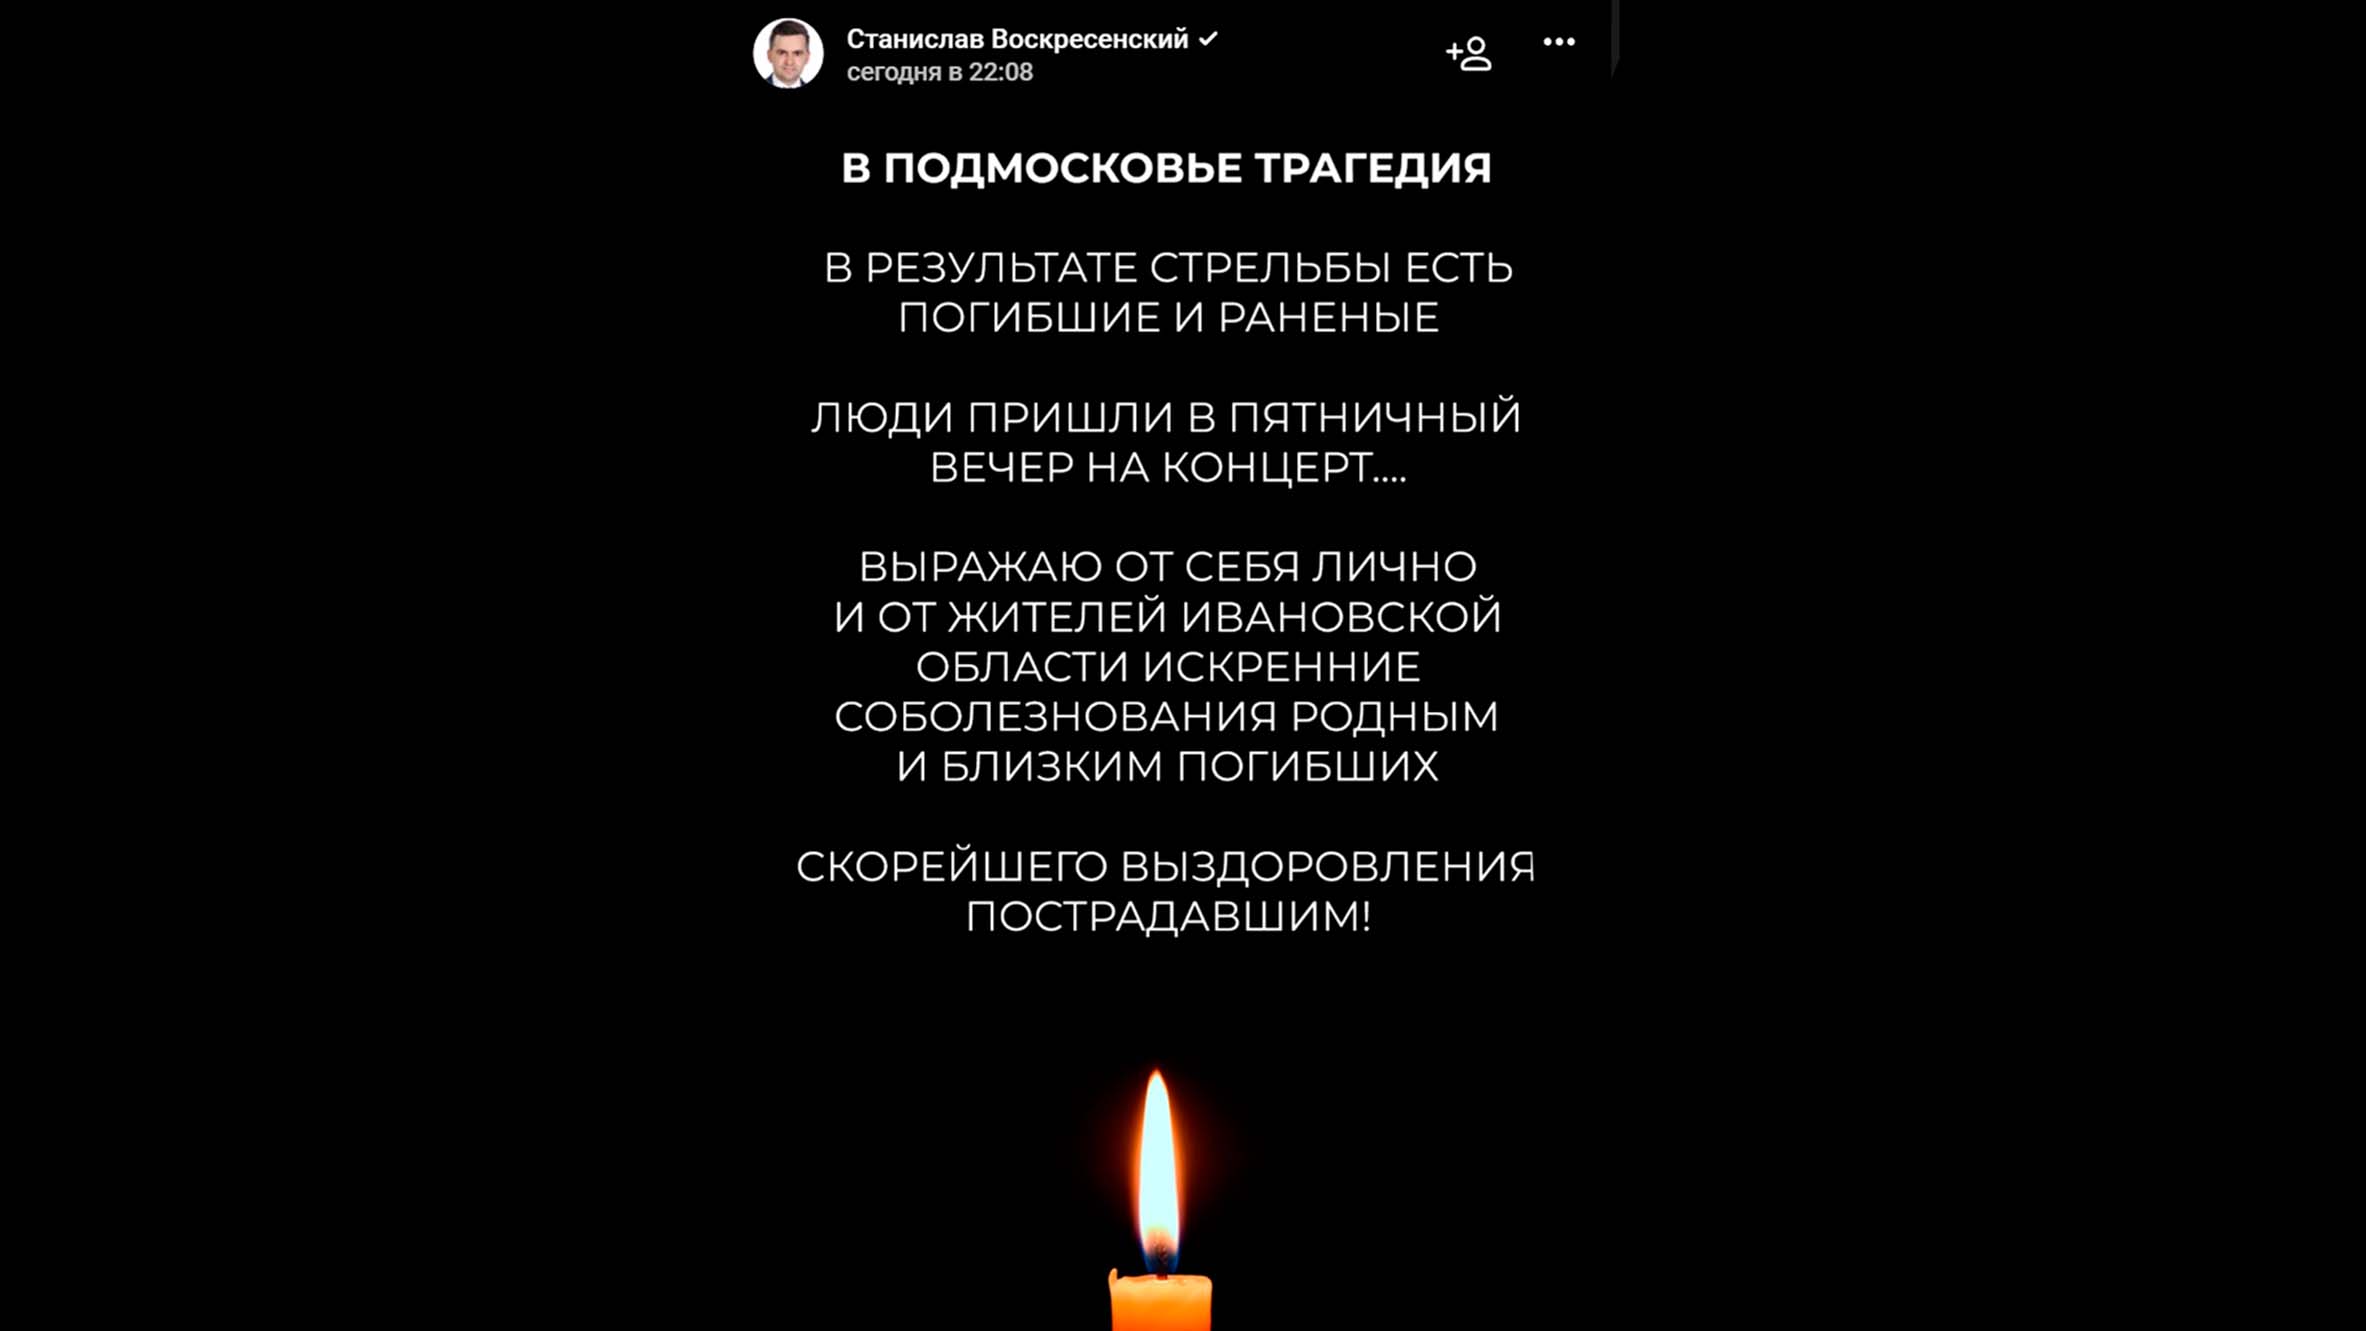 Губернатор Ивановской области выразил соболезнования в связи с трагедией в Подмосковье